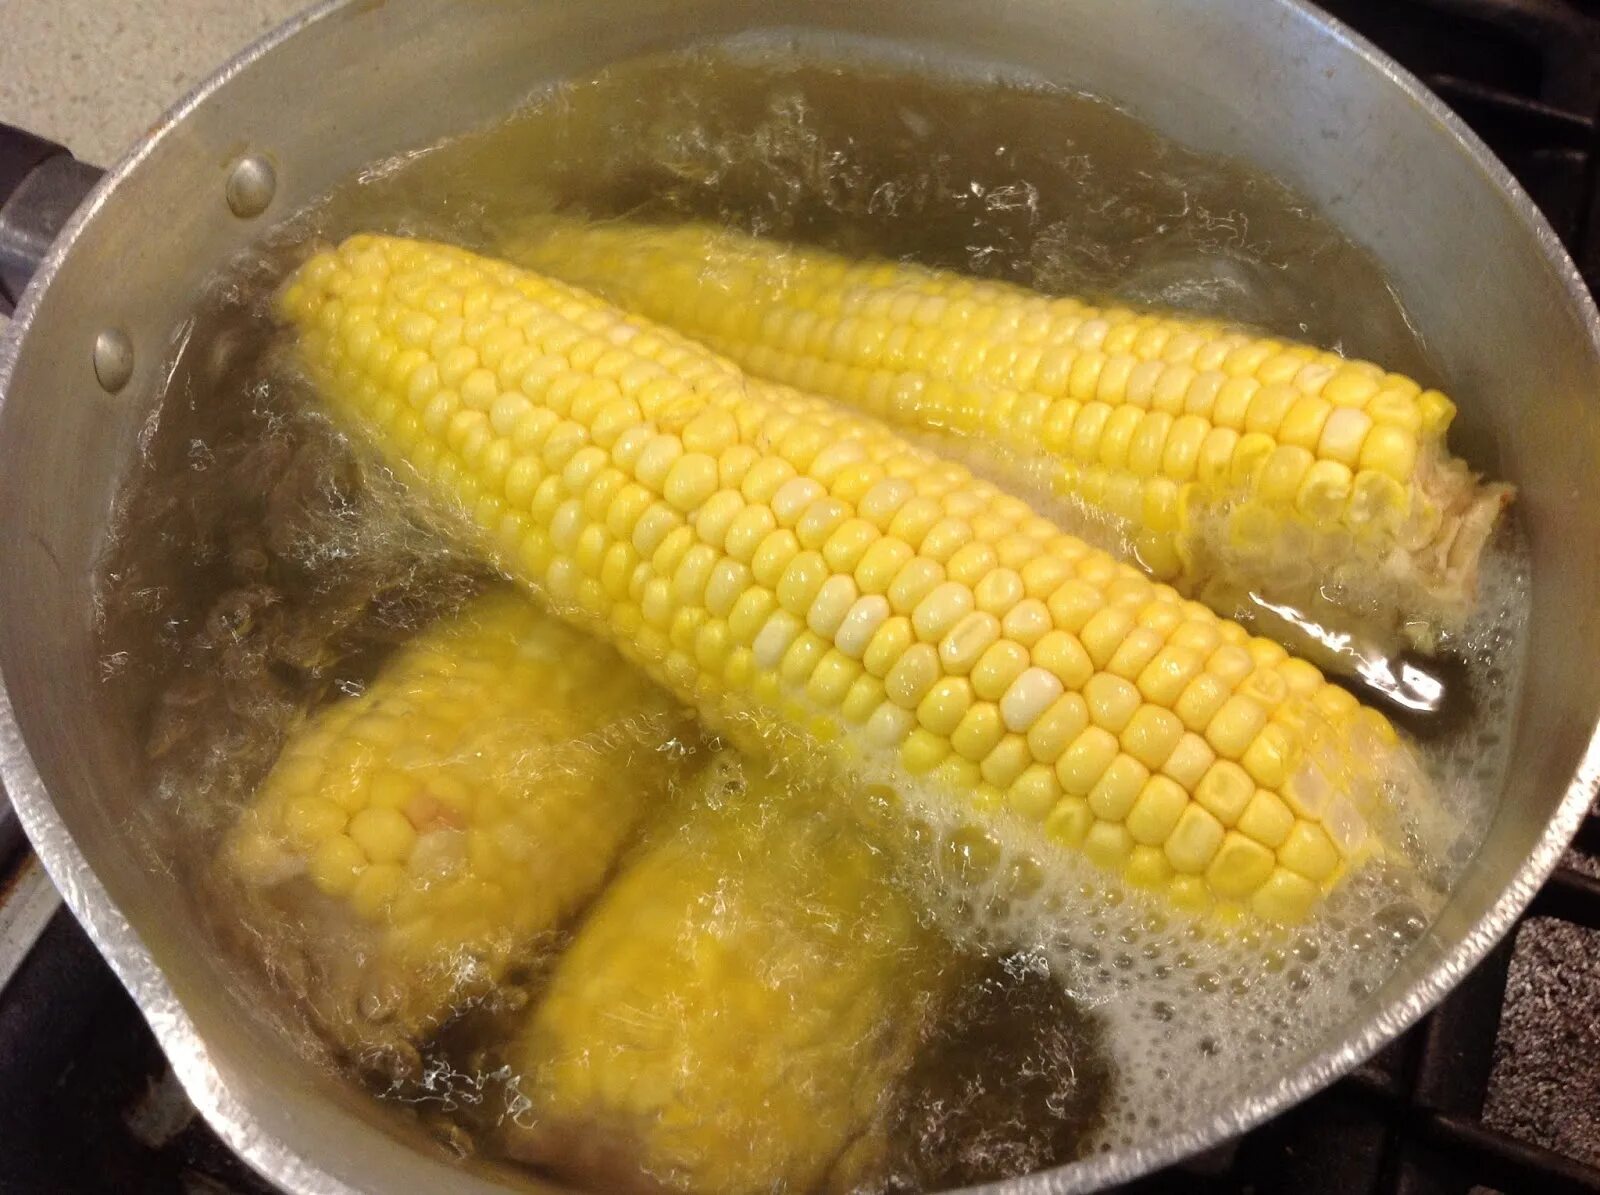 Варить початках в кастрюле. Вареная кукуруза. Кукуруза отварная. Вареная кукуруза в кастрюле. Горячая кукуруза вареная.